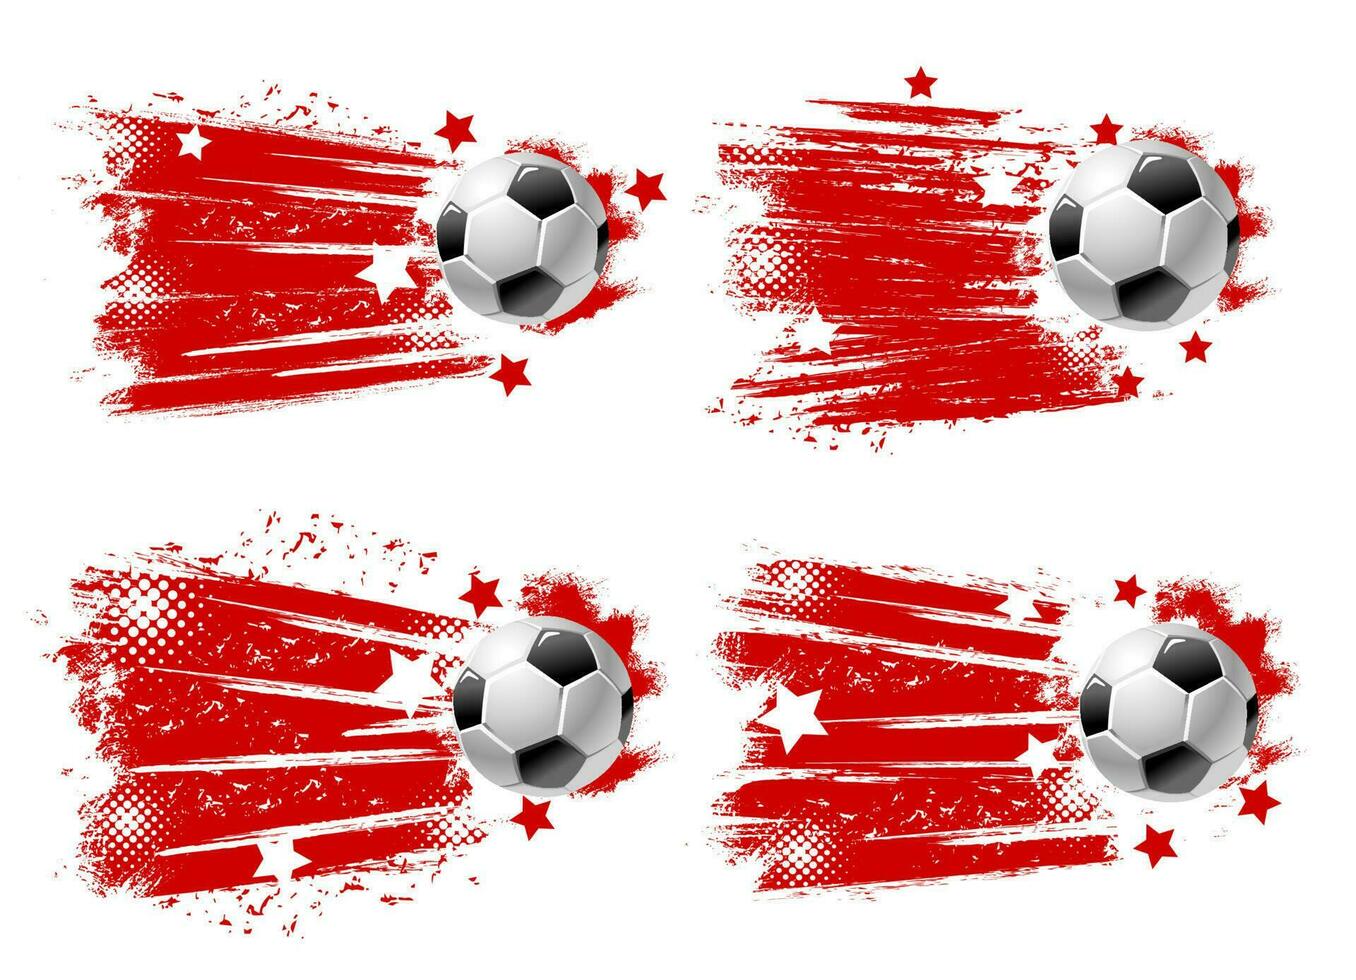 fútbol pelota, fútbol americano deporte objetivo trama de semitonos pancartas vector